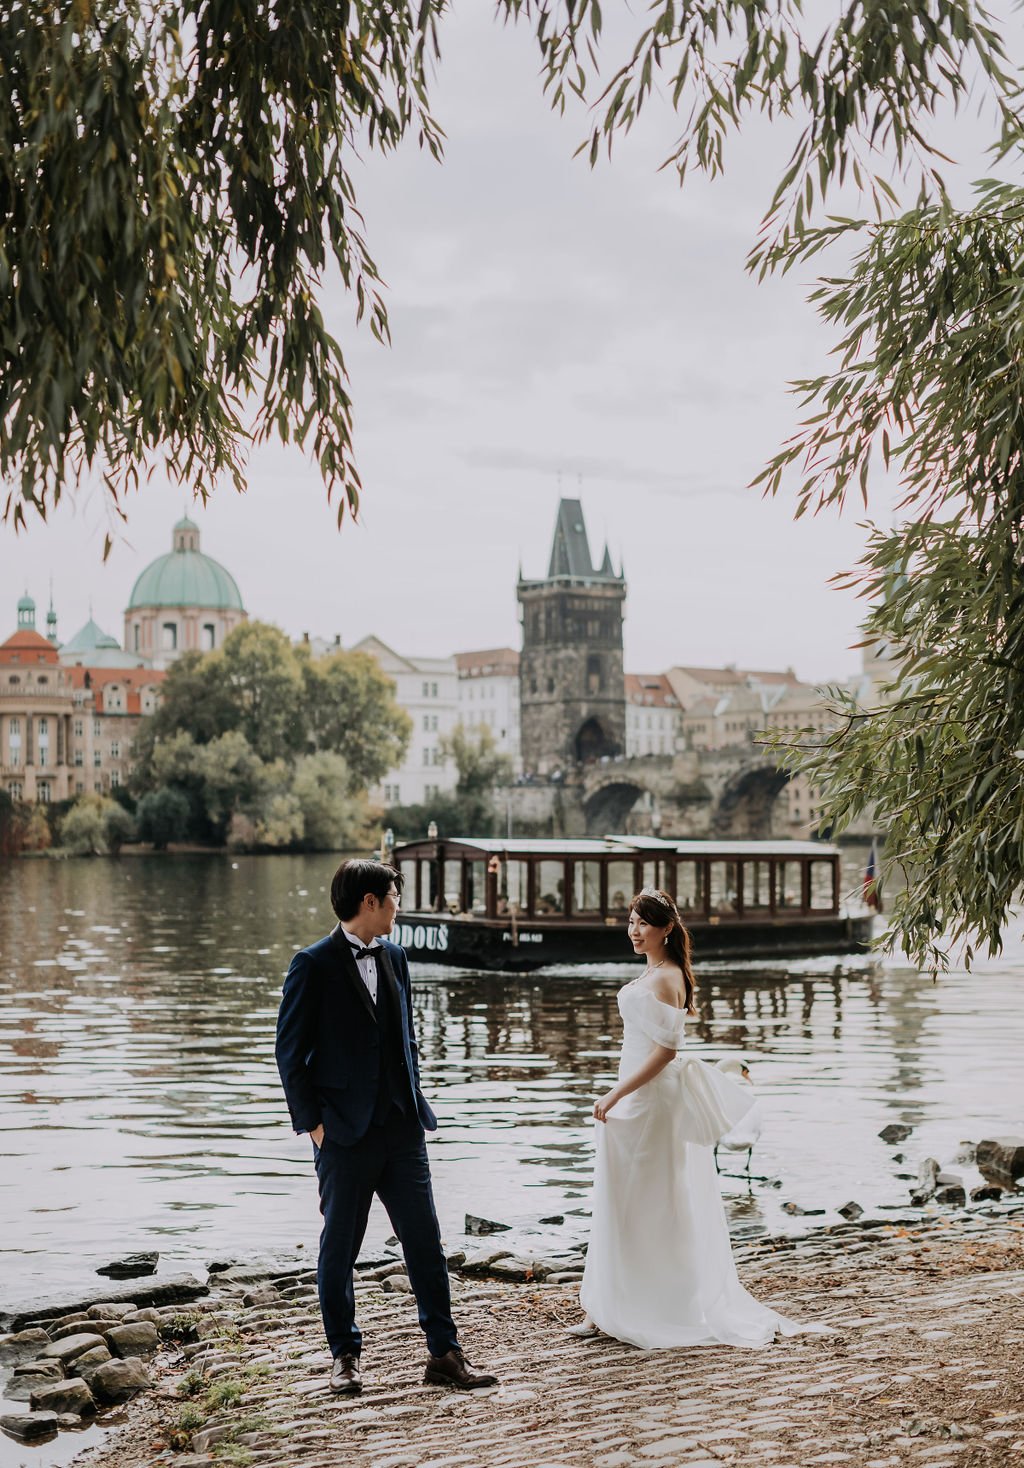 Prague prewedding photoshoot at Old Town Square, Vlatava Riverside, Vojanovy Gardens, Wallenstein Garden